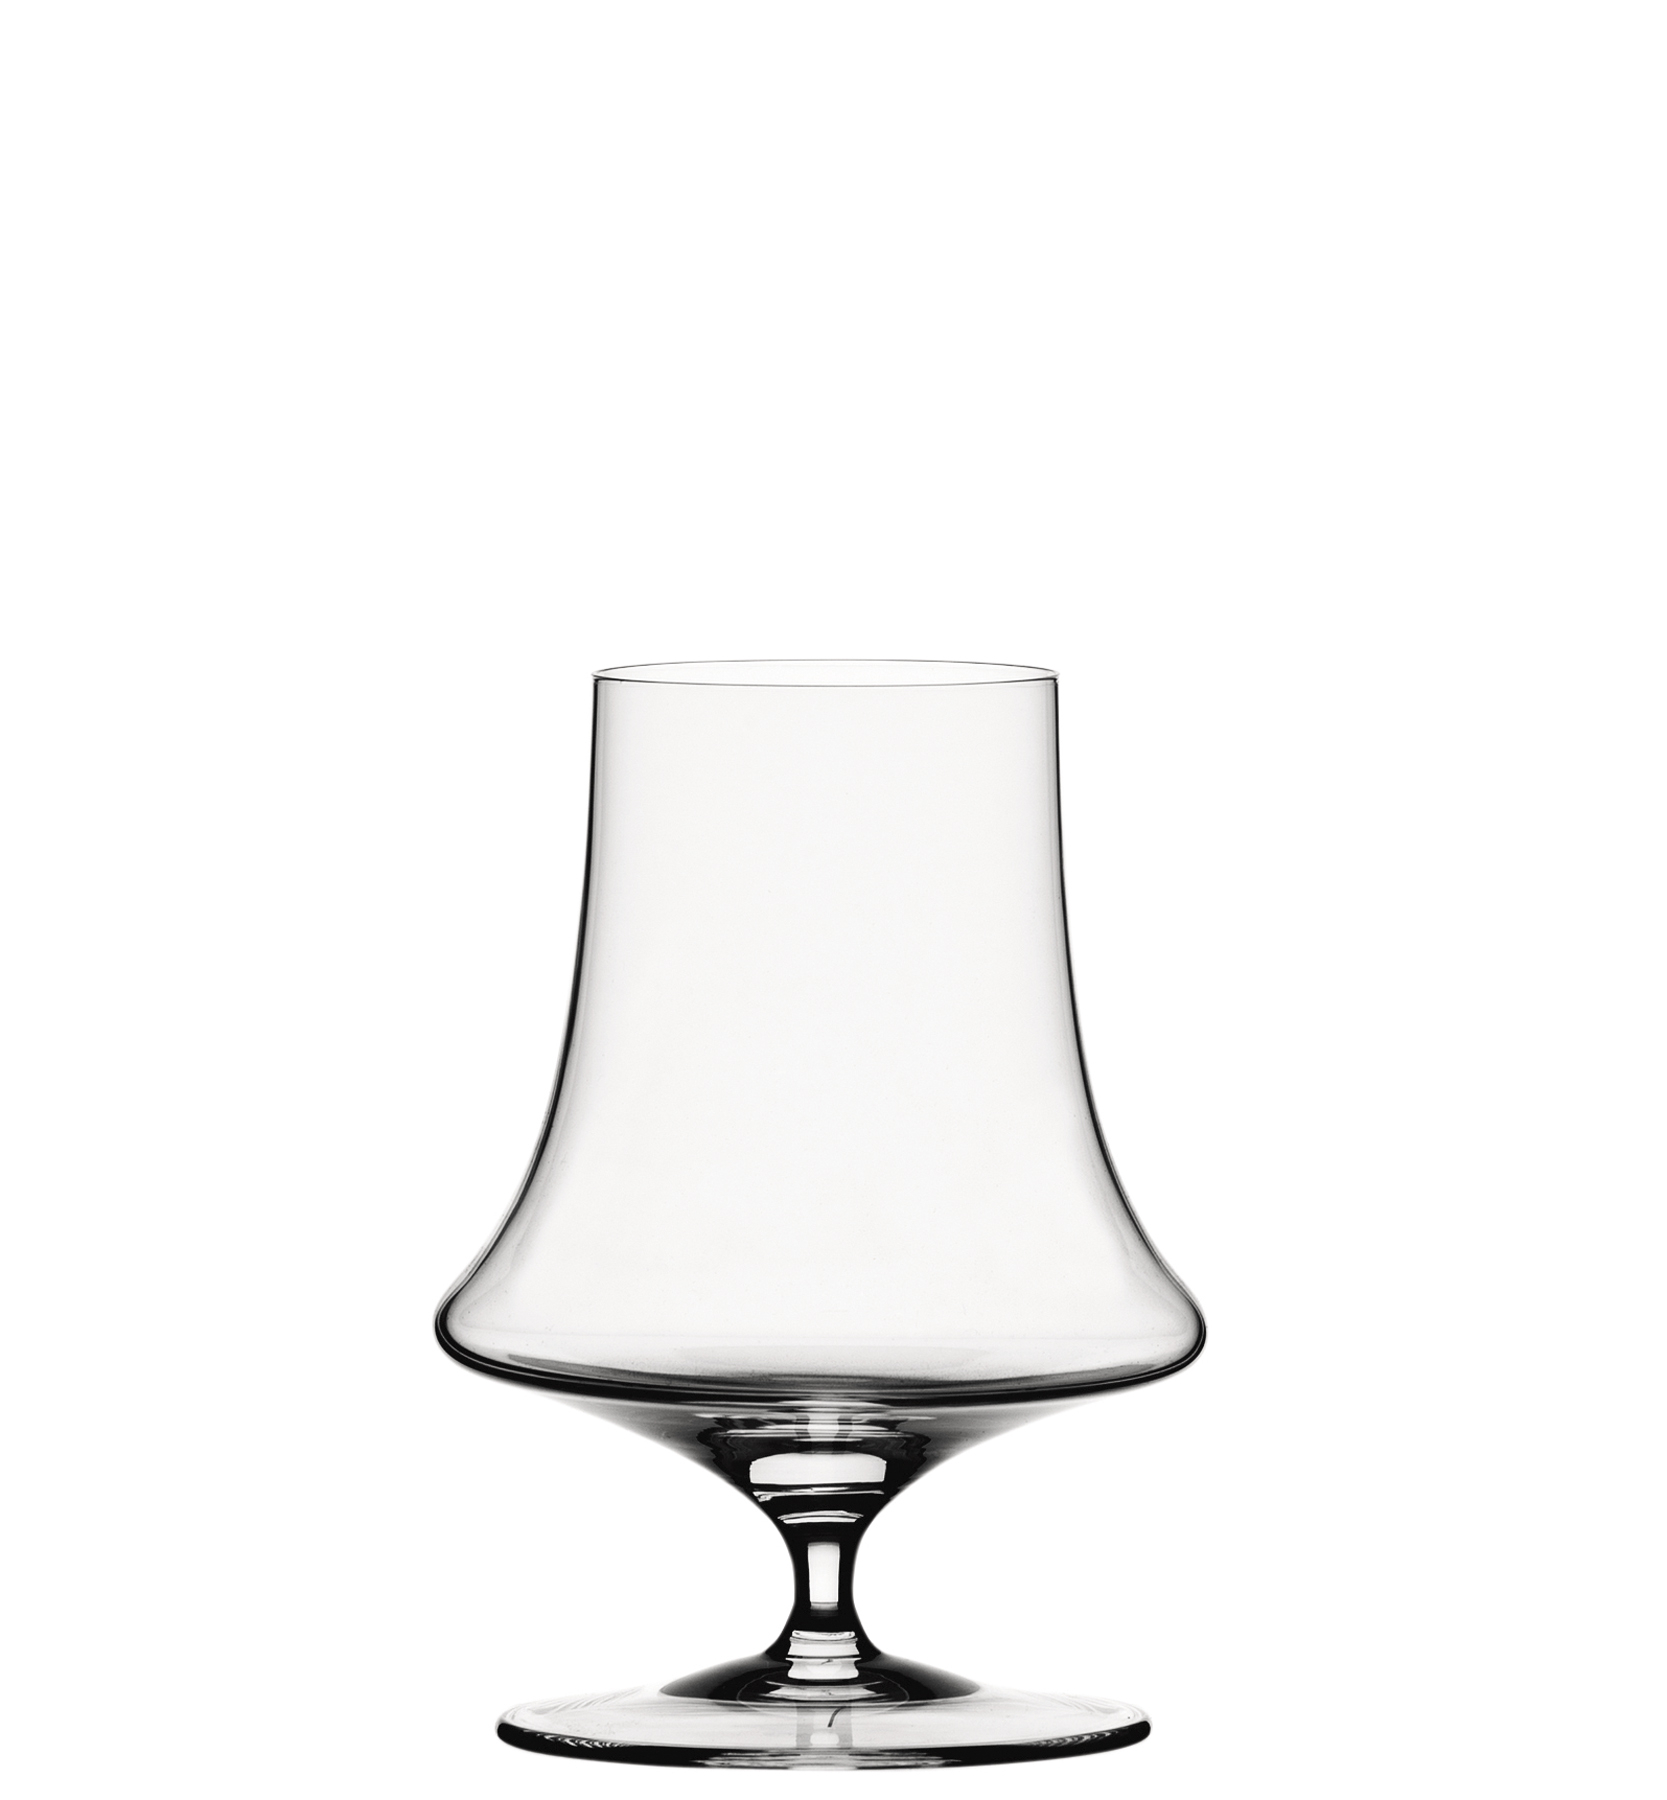 Whiskyglas Willsberger Anniversary, Spiegelau - 365ml (1 Stk.)